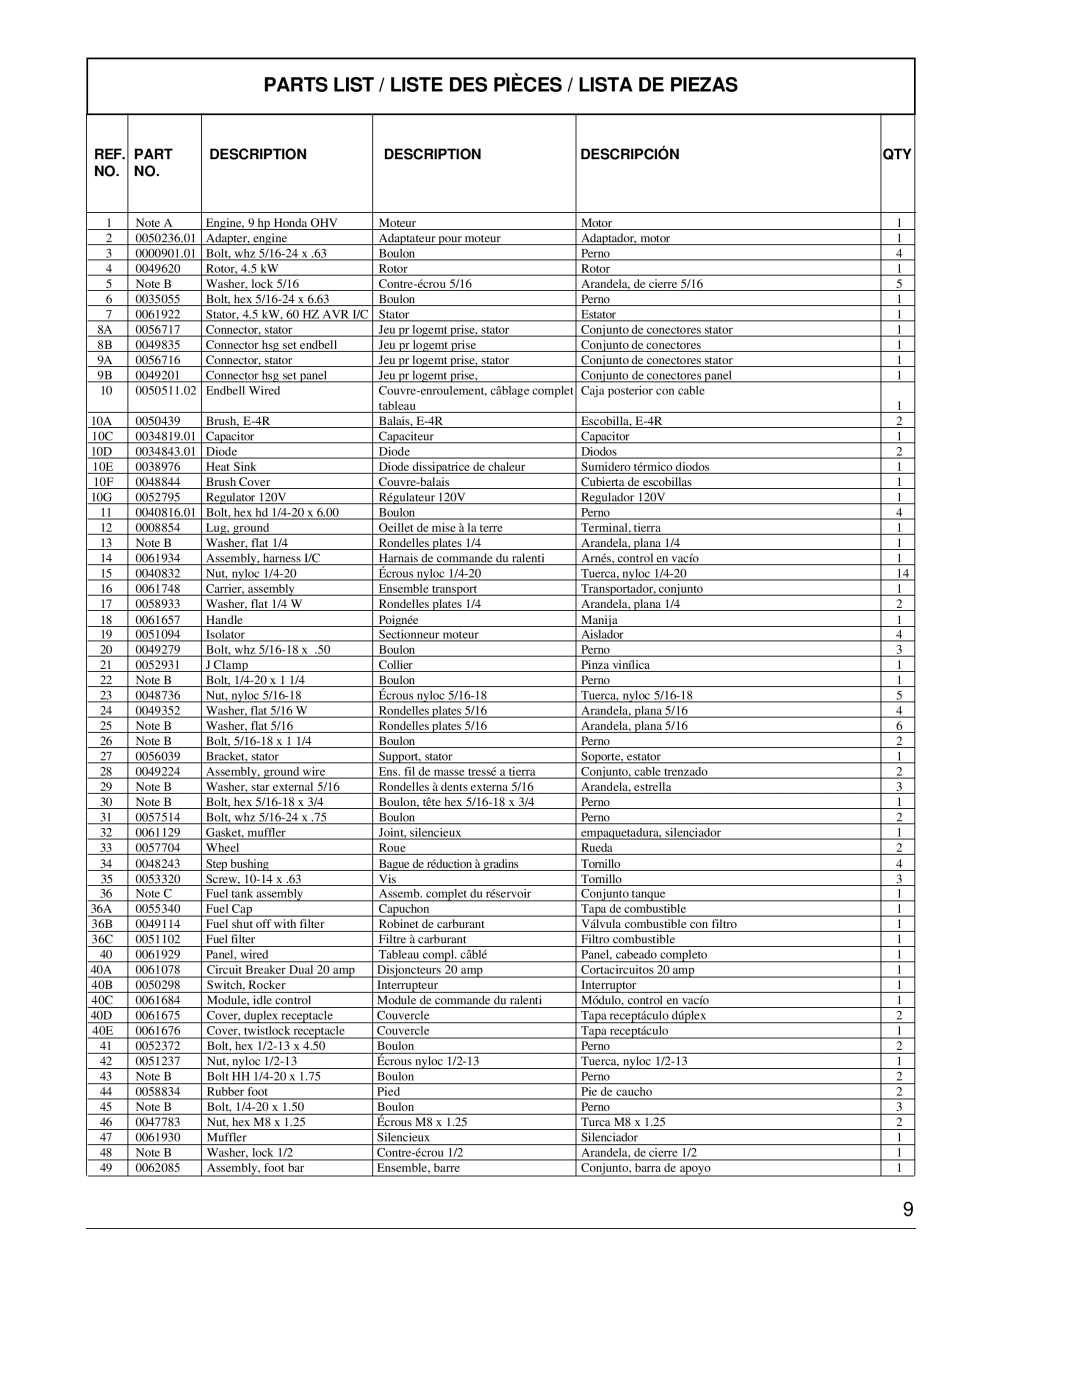 Powermate PC0464500 manual Parts List / Liste Des Pièces / Lista De Piezas, Description, Descripción 